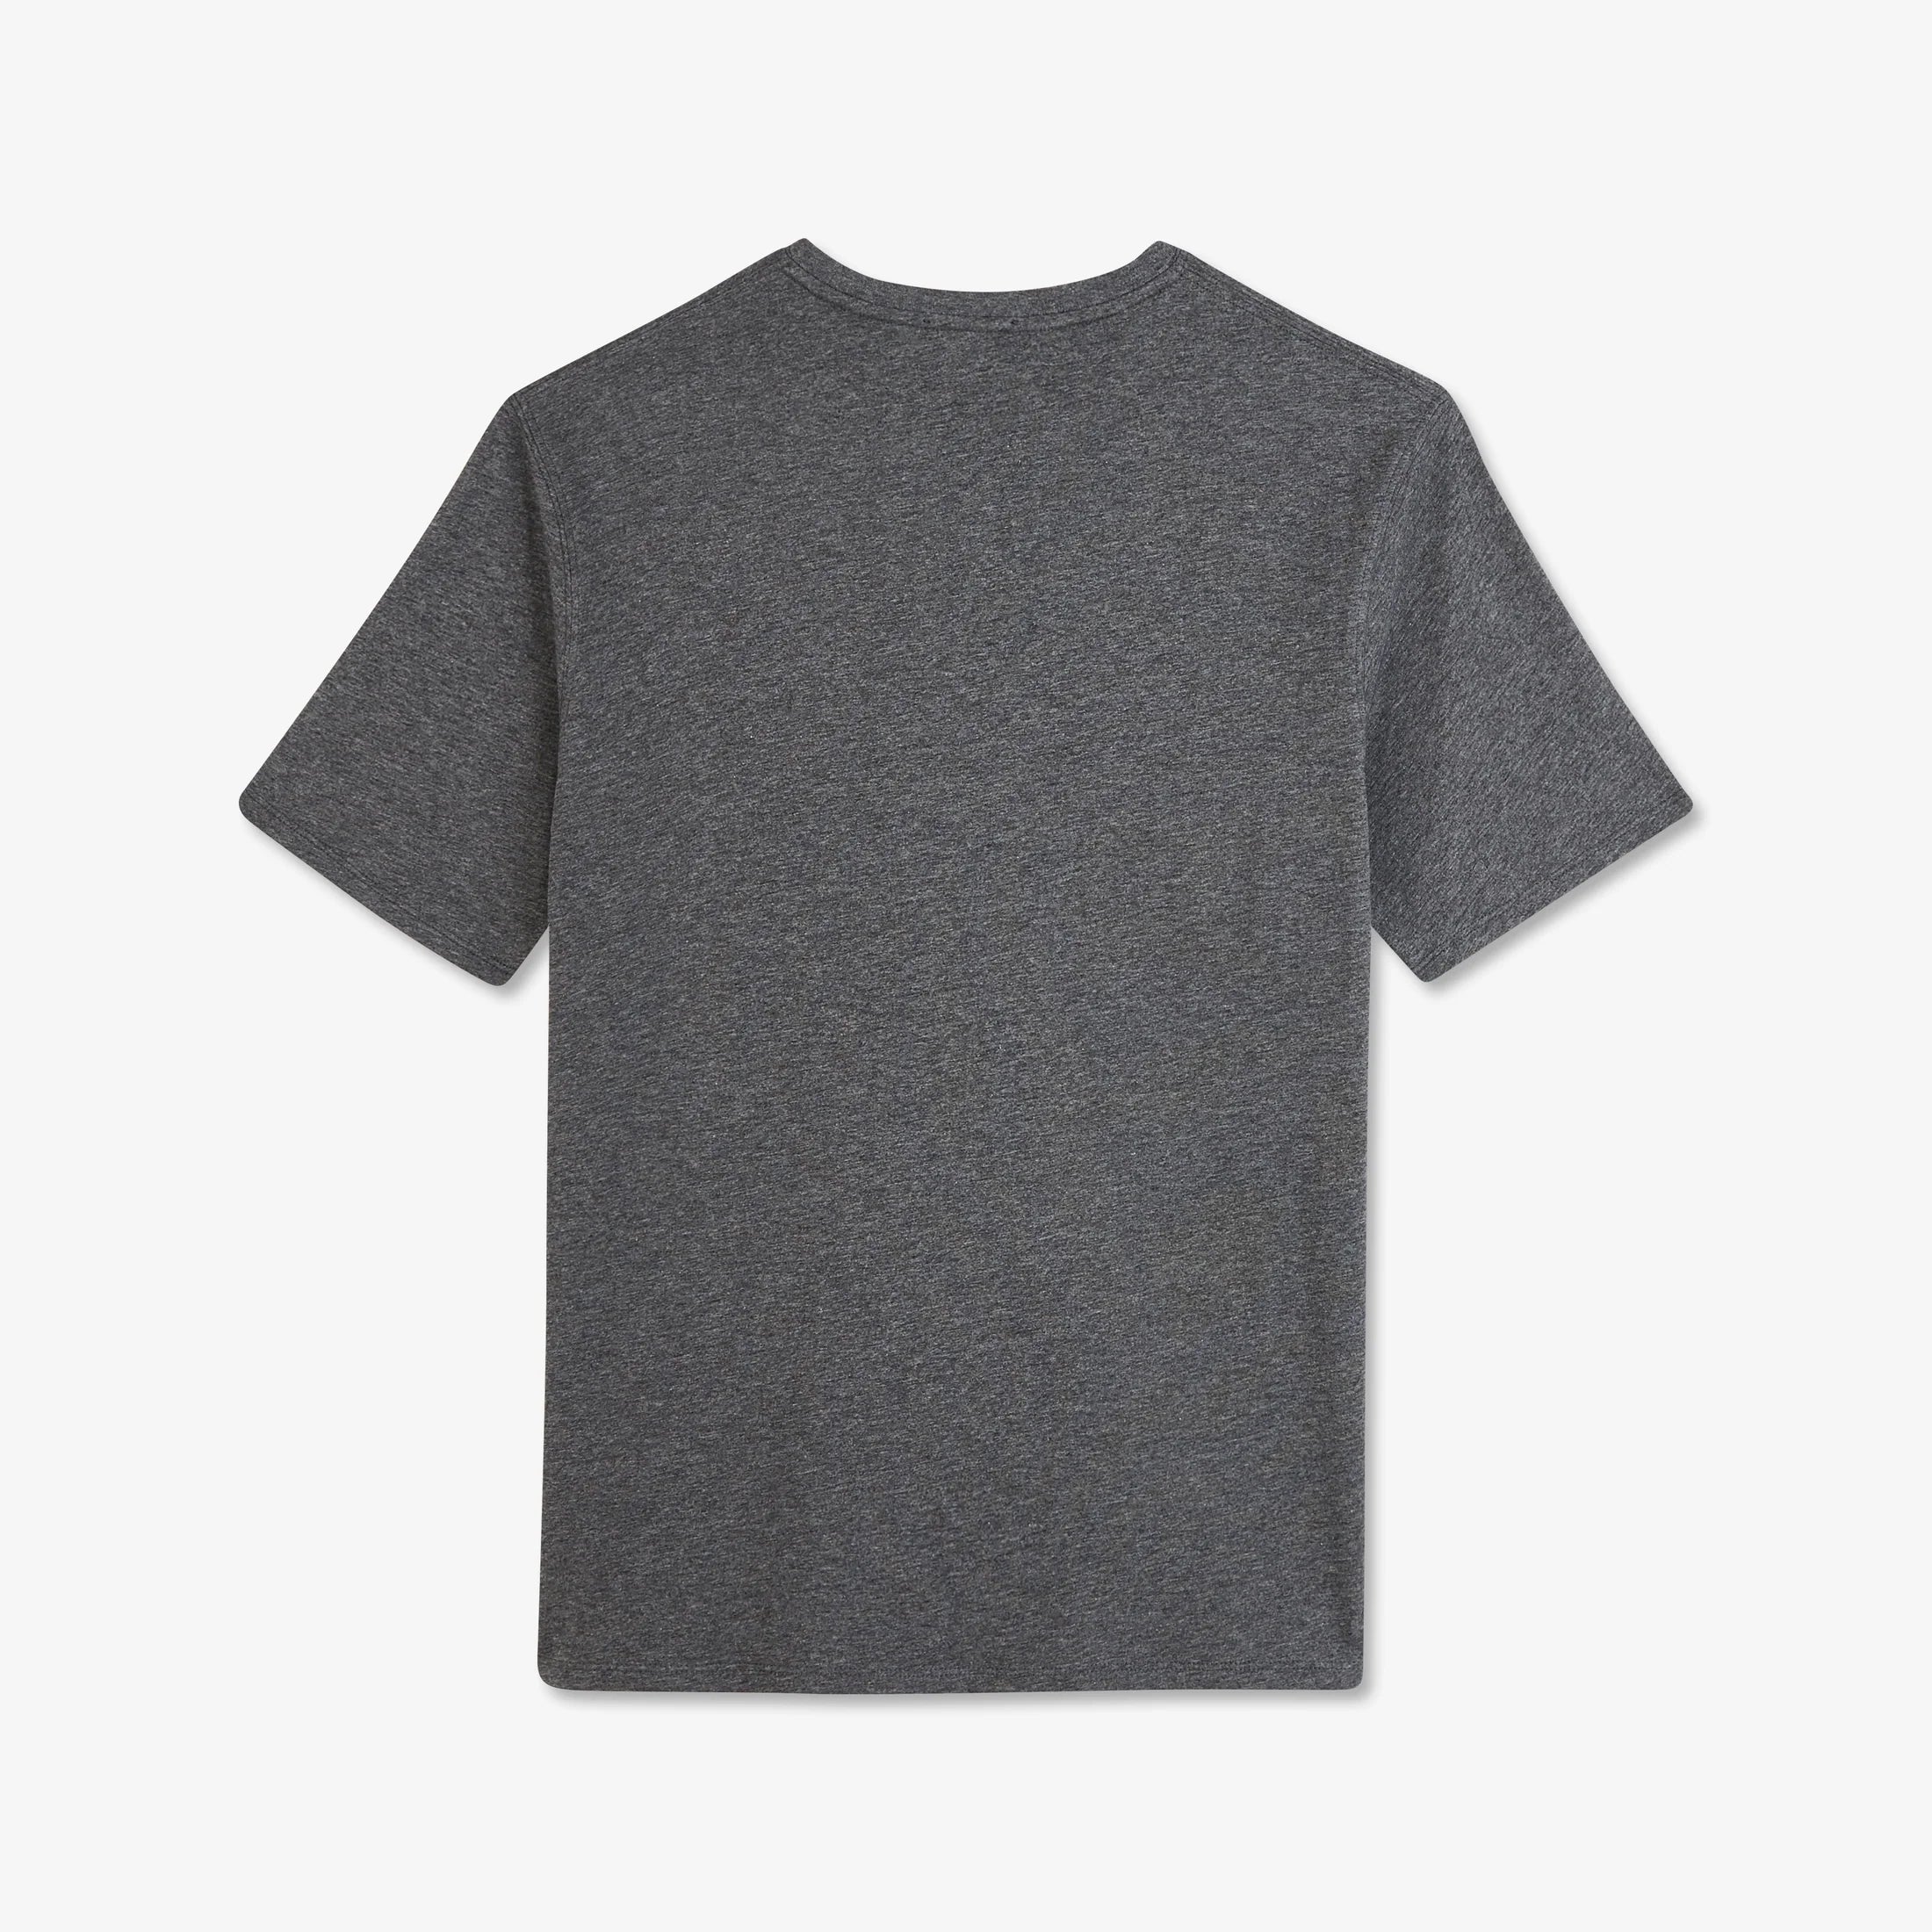 v-neck-grey-light-pima-cotton-t-shirt_ppknitce0008_grf_04